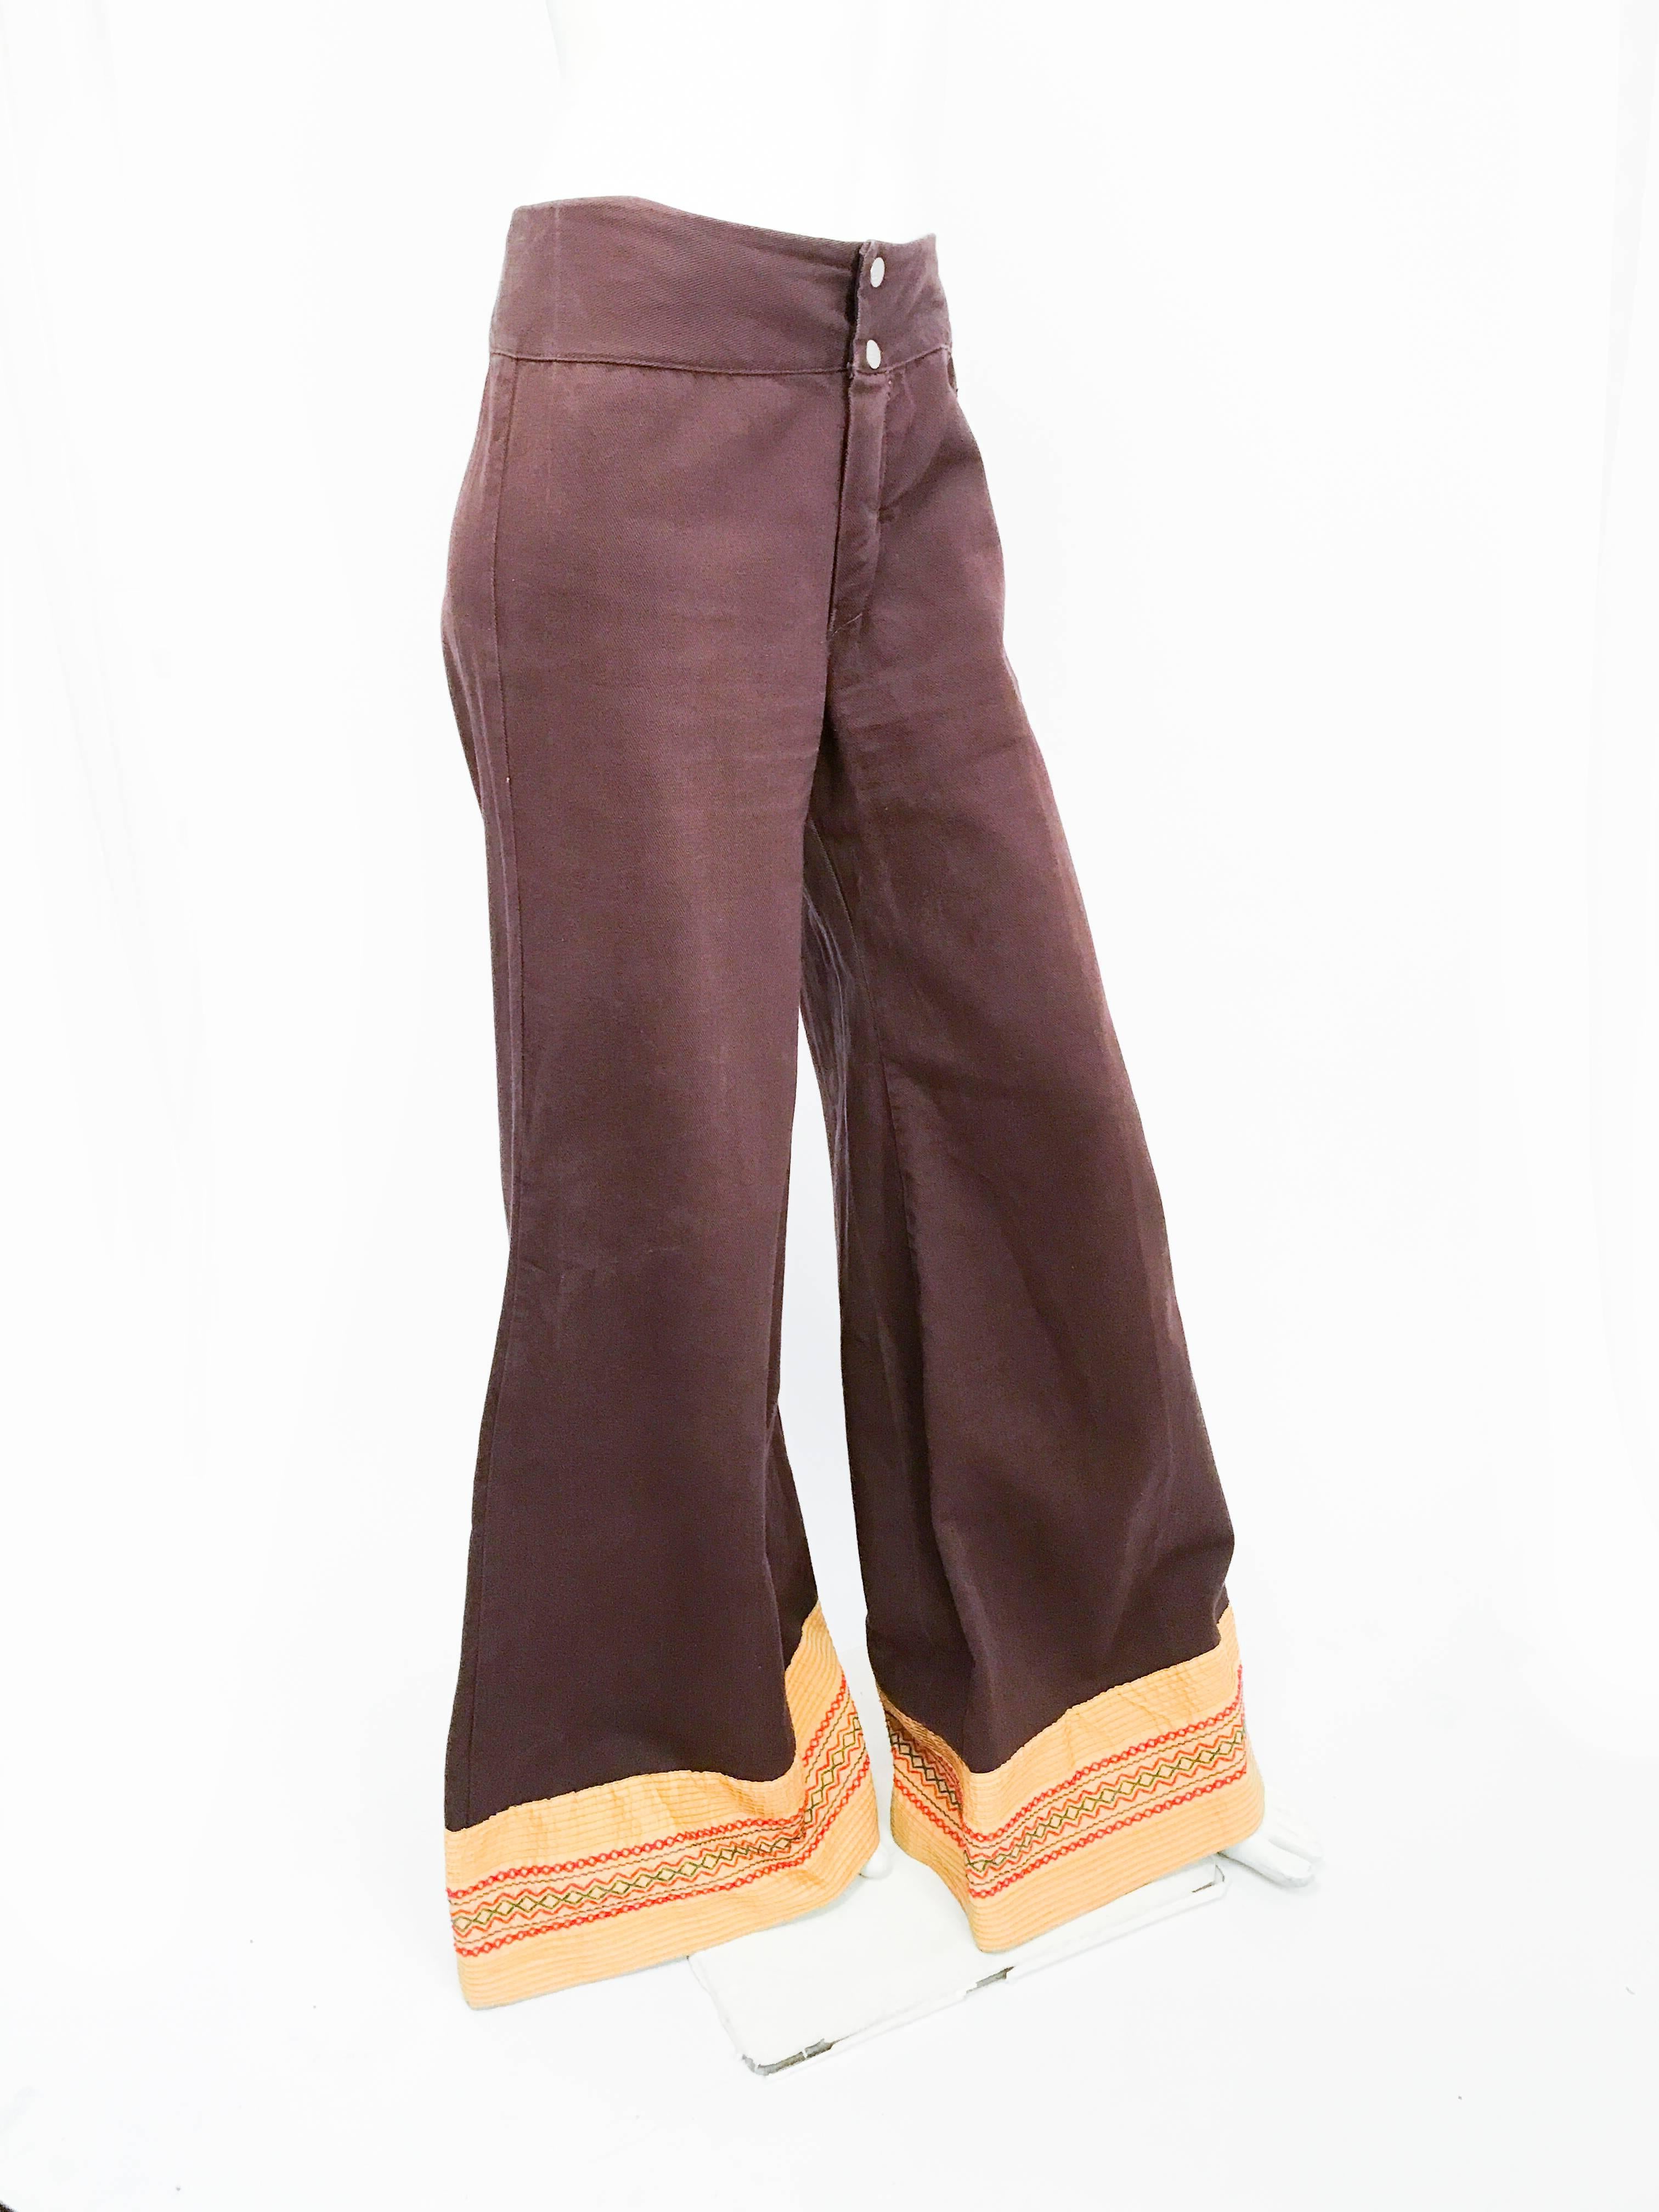 braune Hose mit weitem Bein und verziertem Saum aus den 1970er Jahren. Braune Hose mit weitem Bein und bestickten gelb/grün/roten Säumen.  Schlitz mit Reißverschluss und Druckknopfverstärkung.